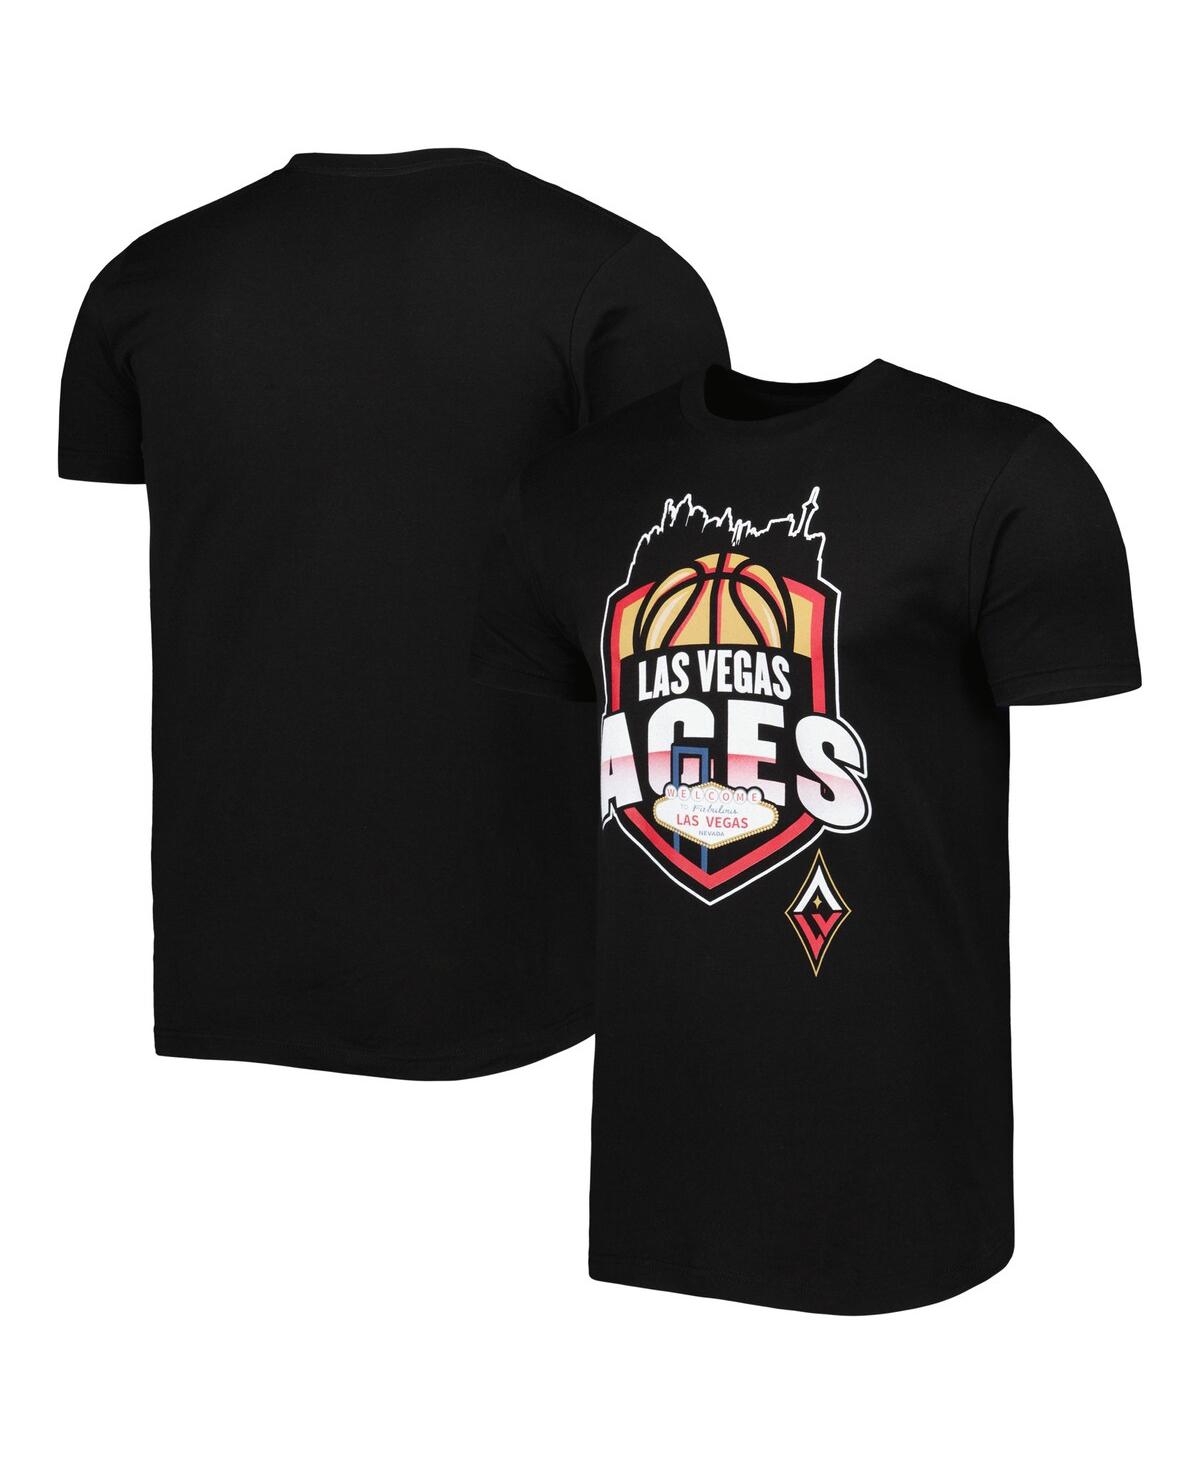 Stadium Essentials Men's And Women's  Black Las Vegas Aces Crest T-shirt